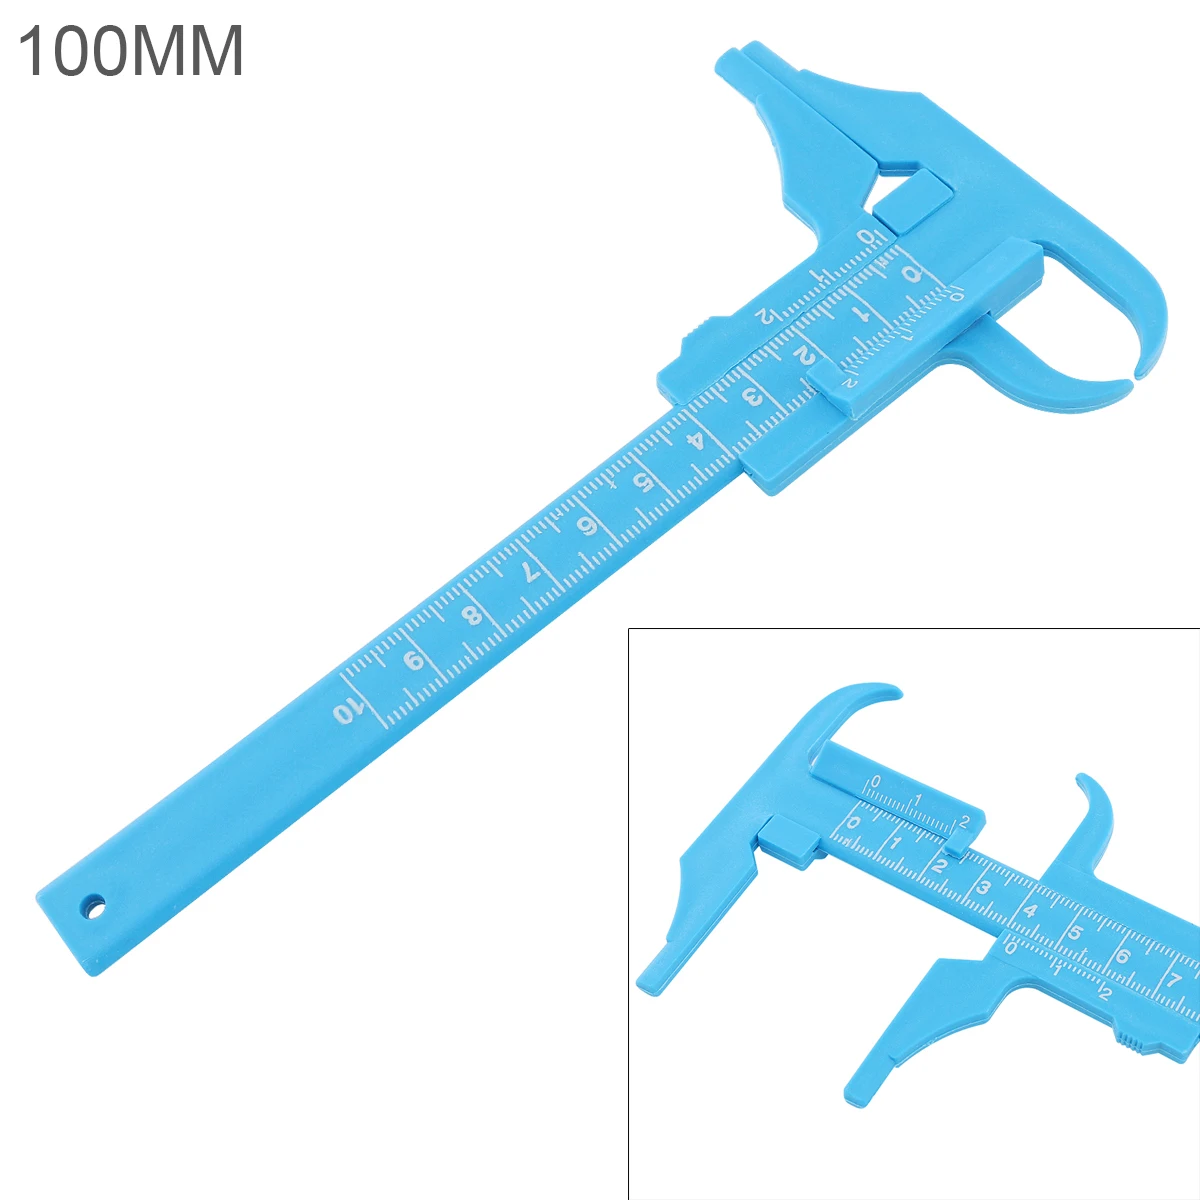 

Vernier Calipers 0-100mm Double Scale Blue Plastic Vernier Caliper Depth Measurement Reading Scale for Antique Measurement